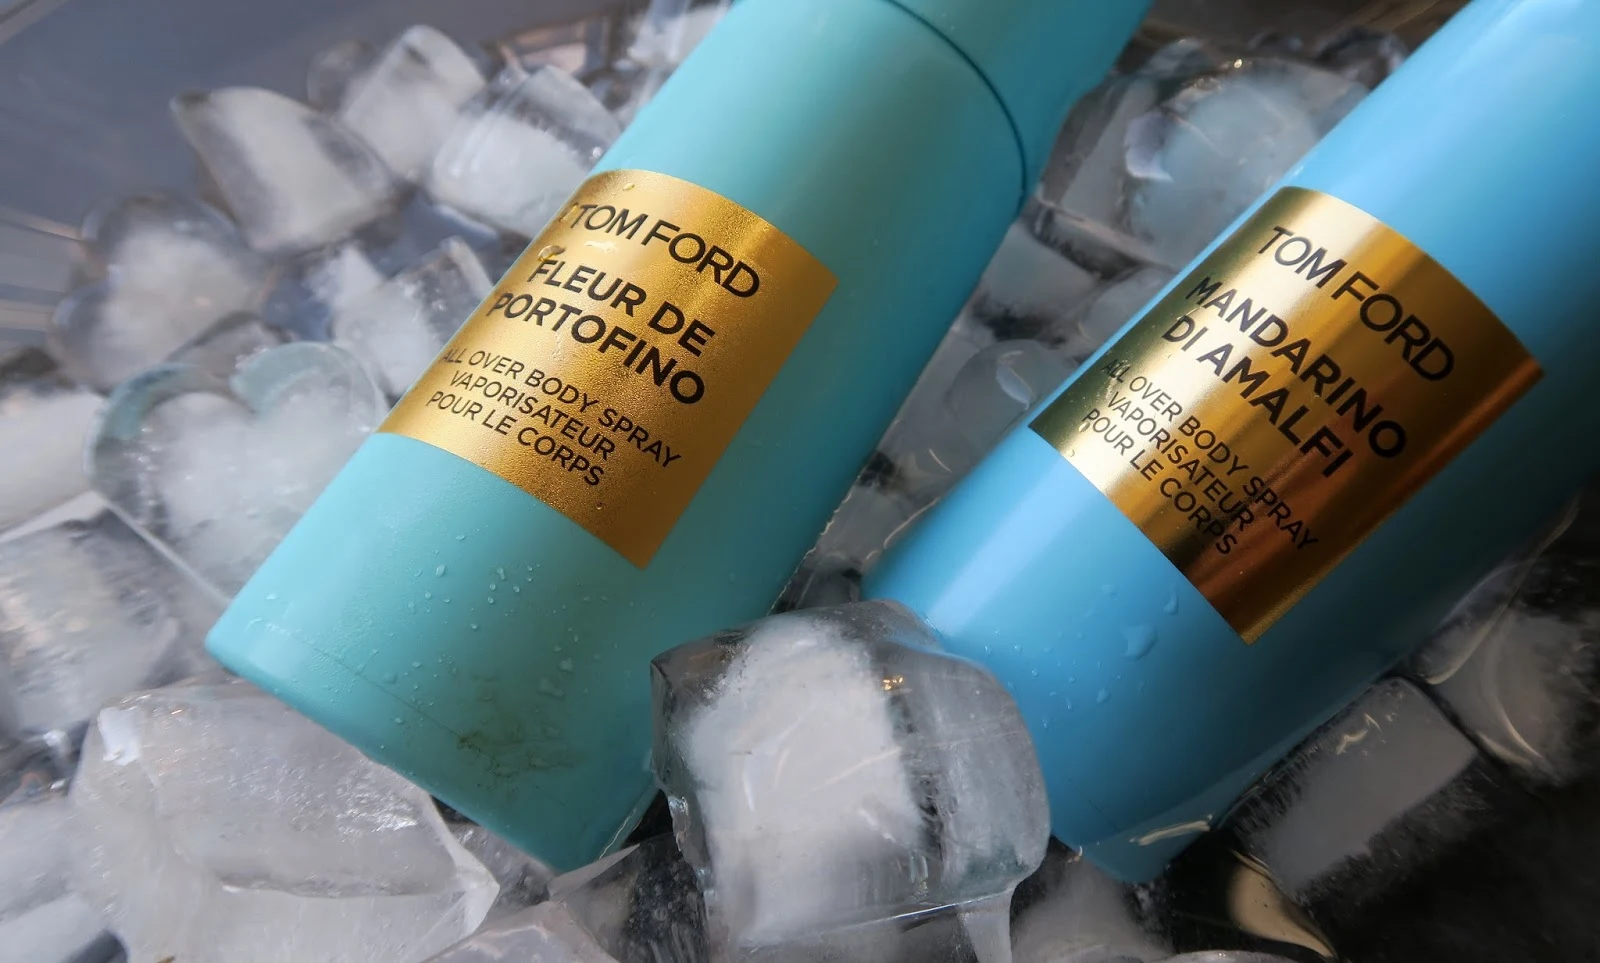 Tom Ford Beauty Neroli Portofino Body Sprays